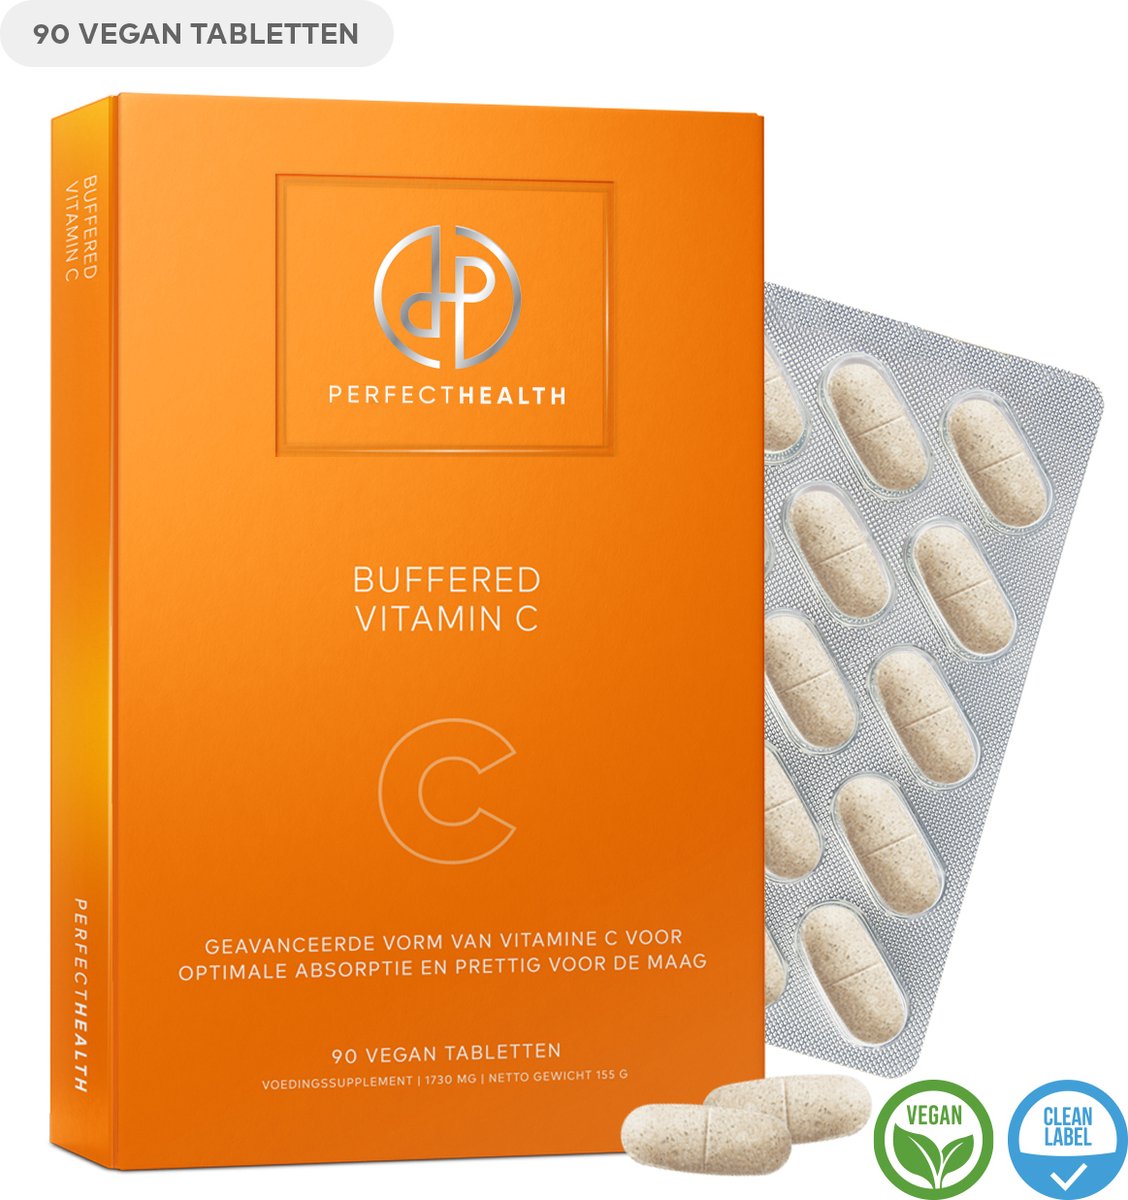 Perfect Health - Buffered Vitamin C - Voor immuunsysteem, bloedvaten, huid en energiehuishouding - 90 tabletten - Hoog gedoseerd - Vegan